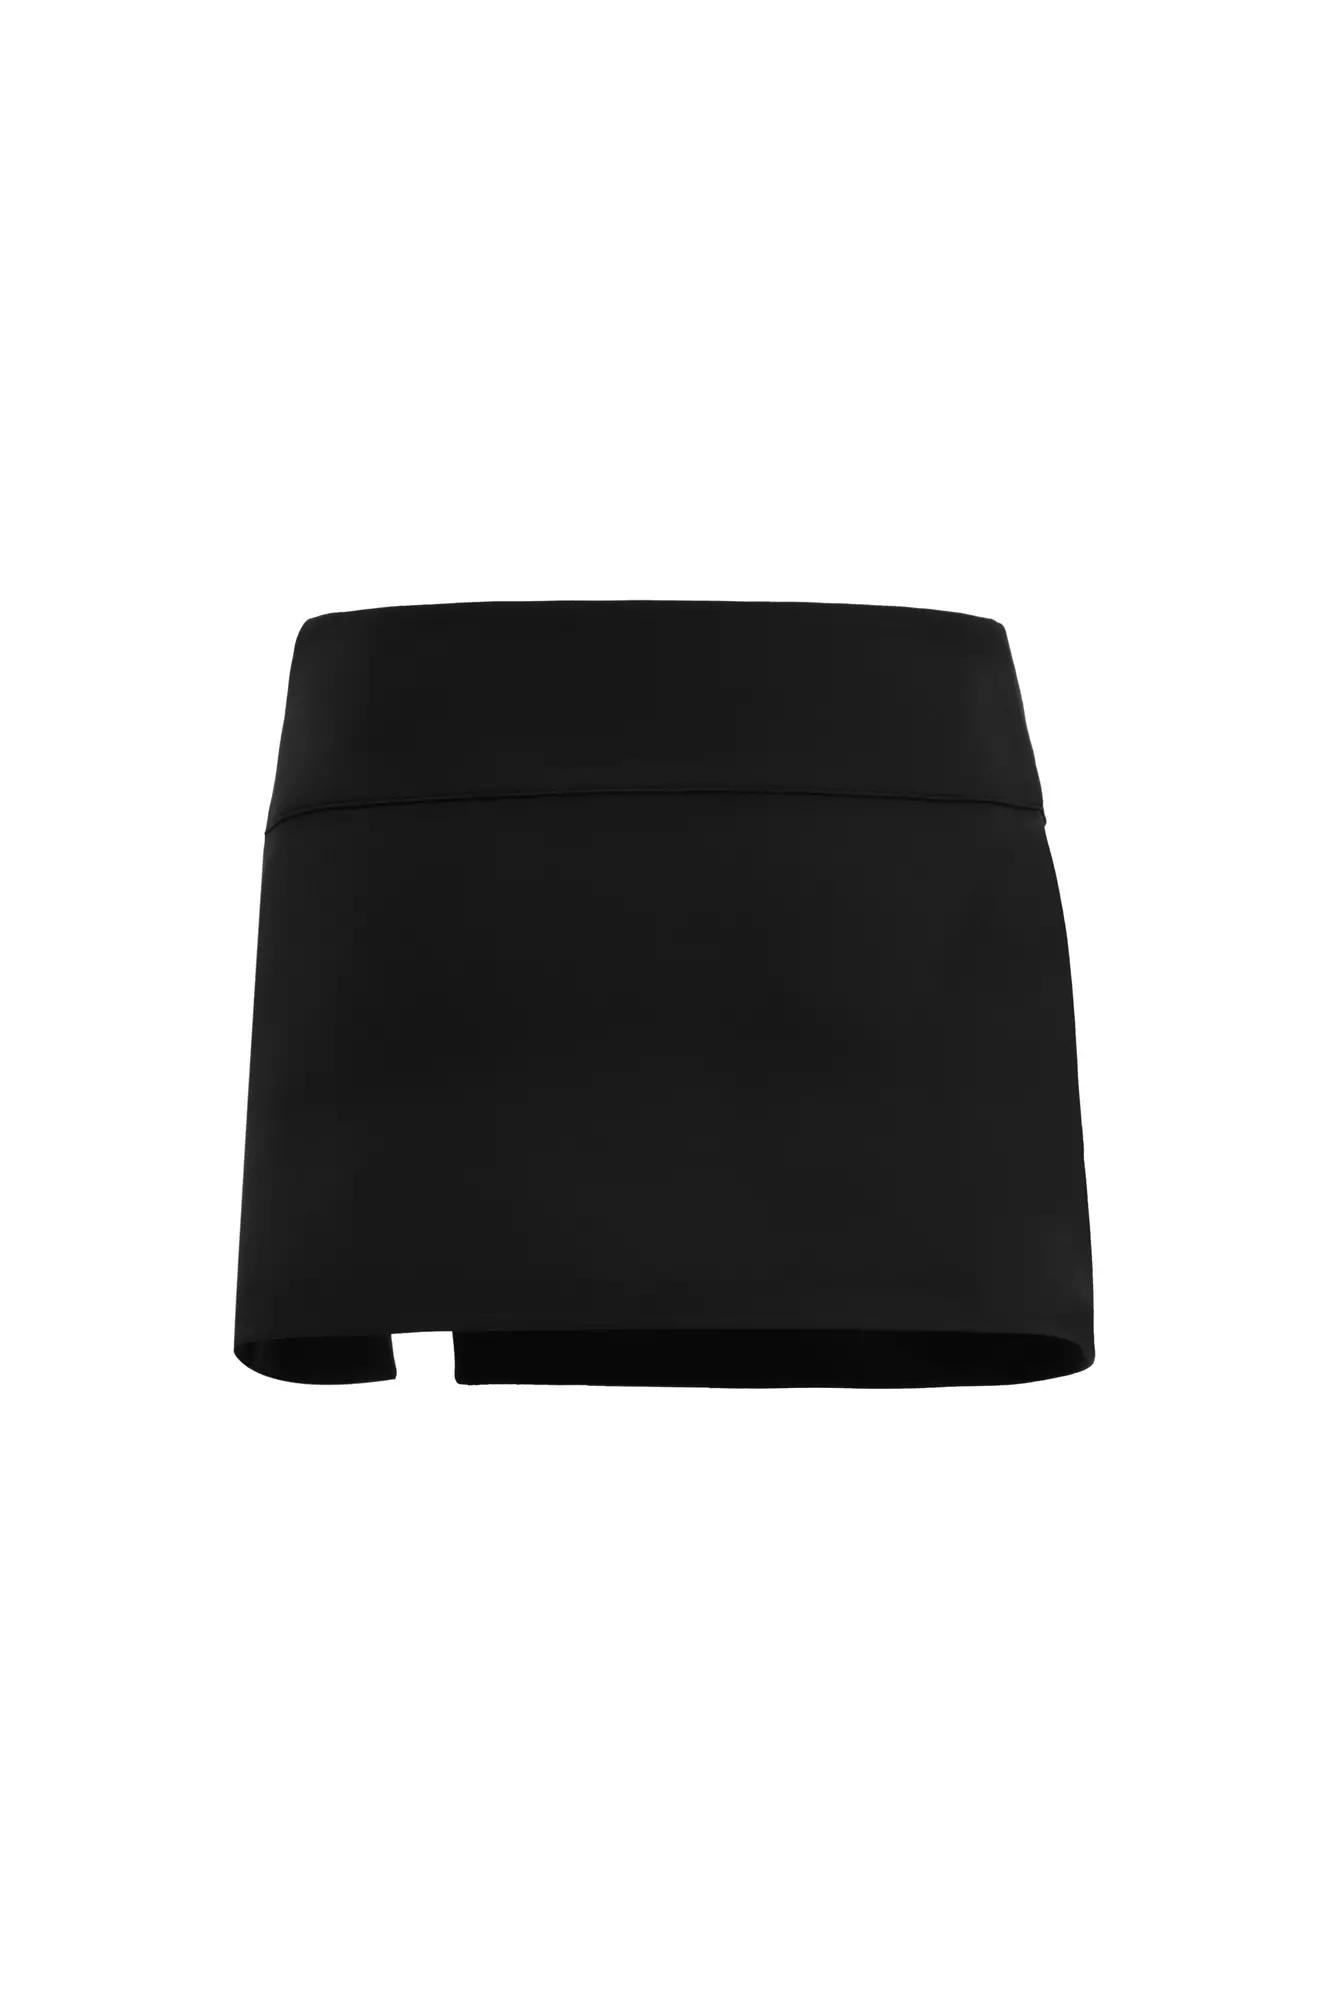 Black crepe mini skirt